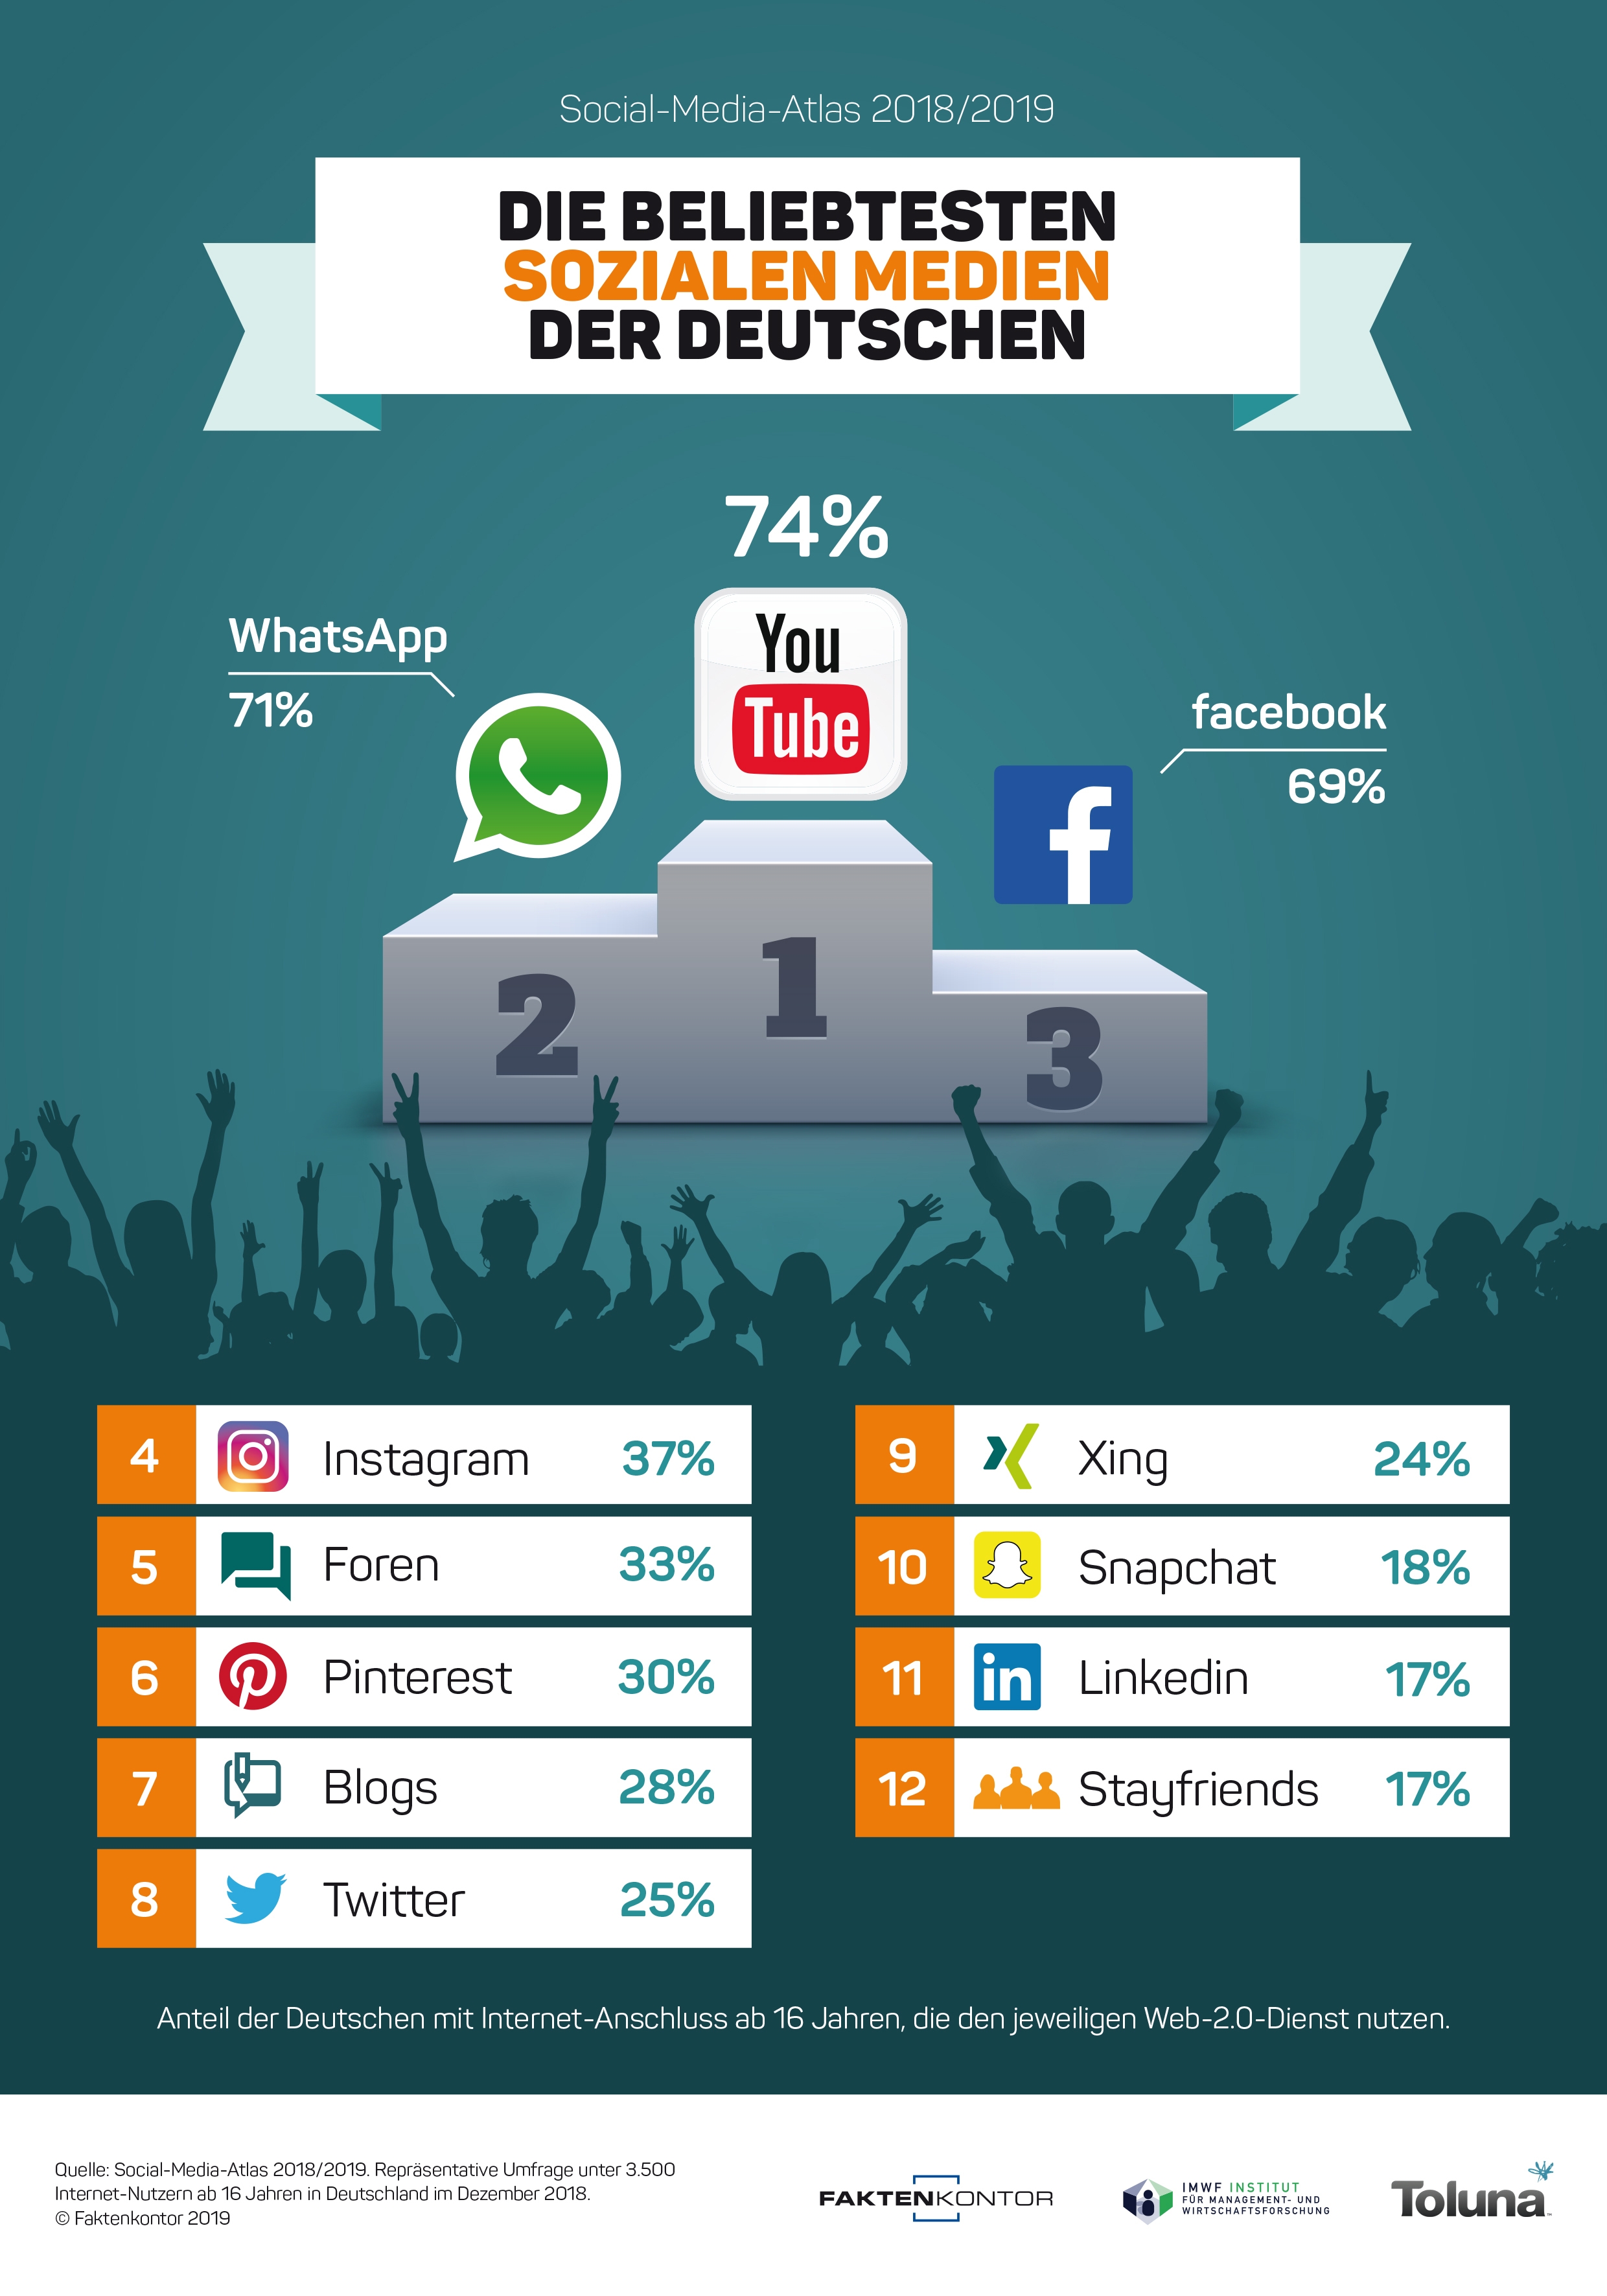 Infografik: "Die beliebtesten Sozialen Medien der Deutschen" zur Faktenkontor-Studie "Social-Media-Atlas 2018-2019"